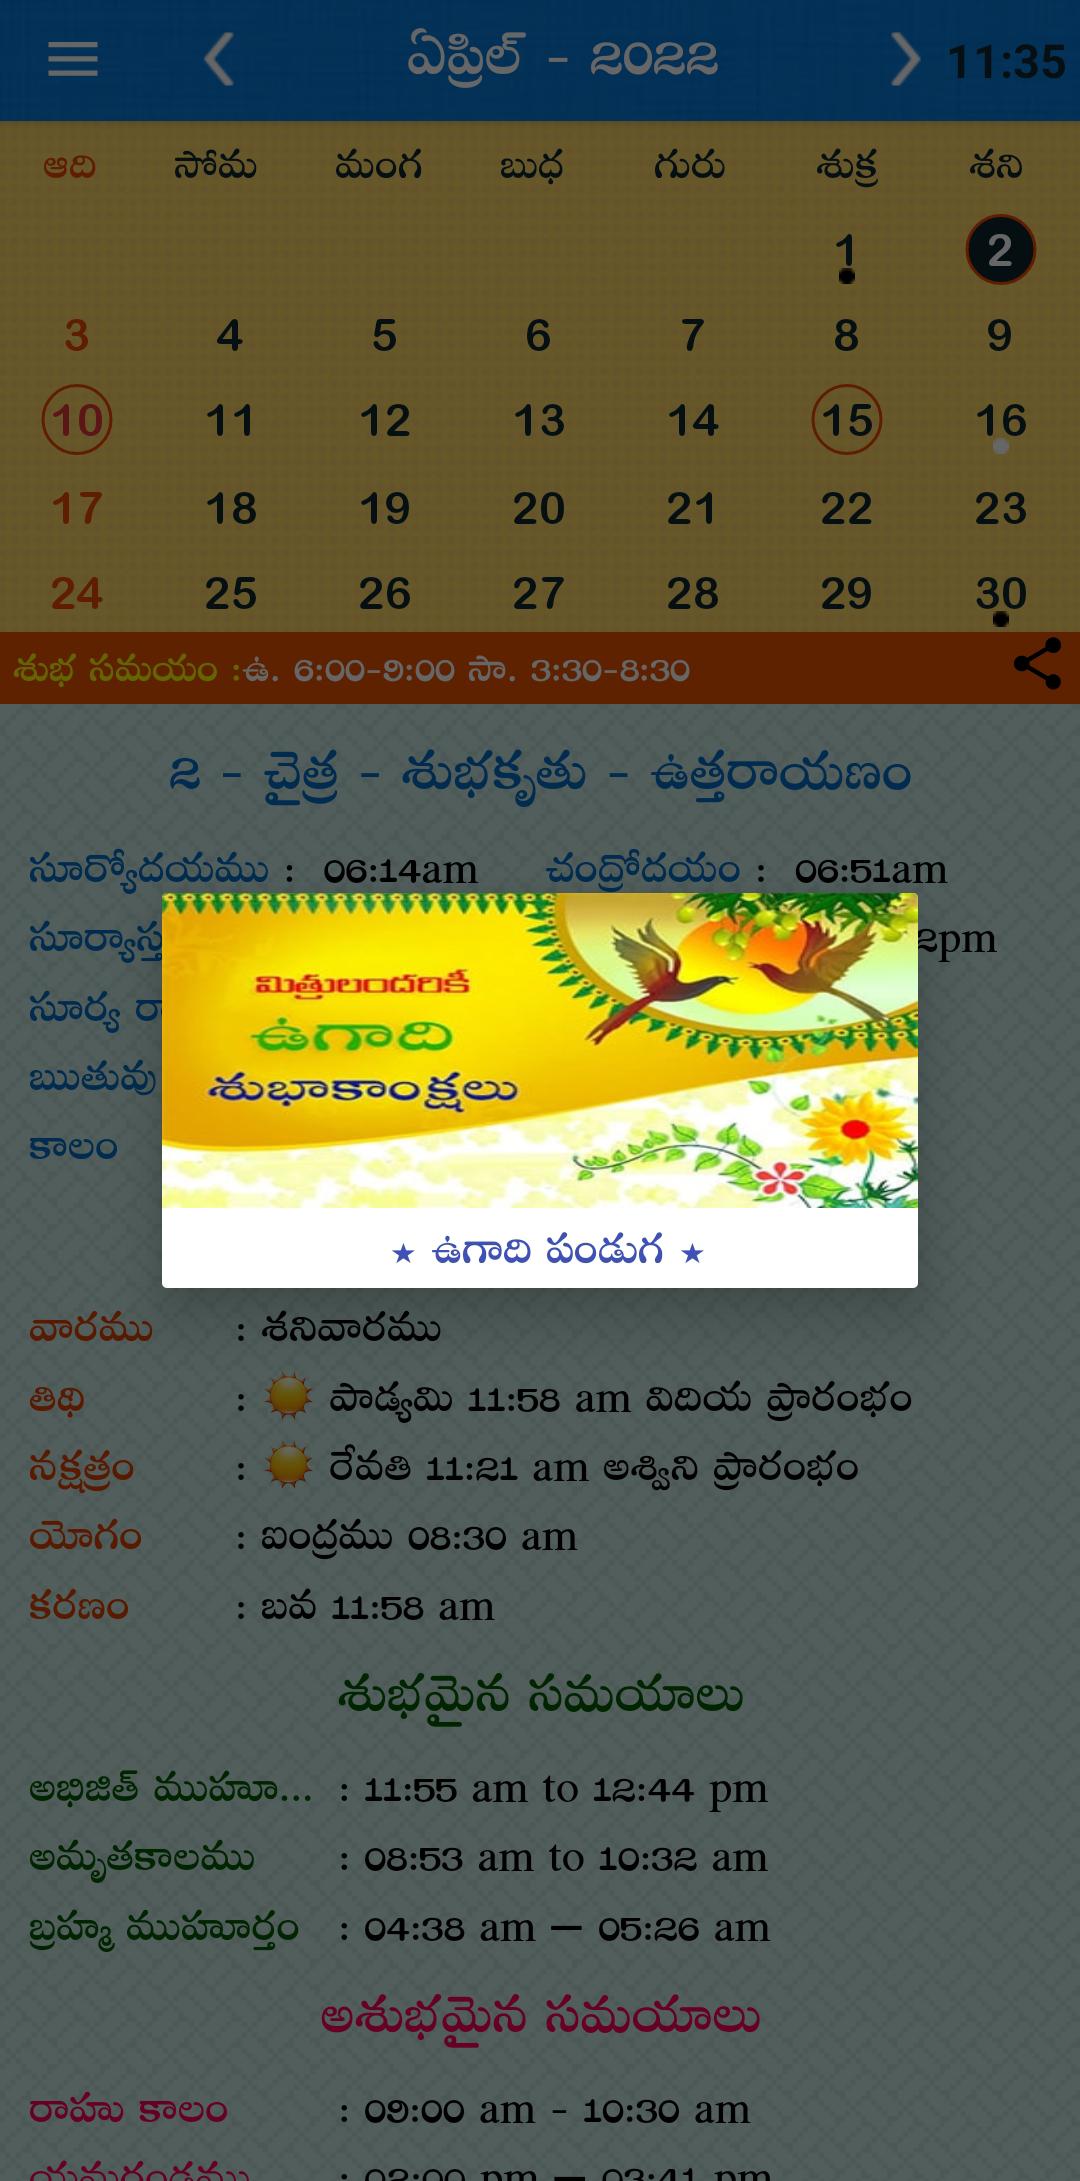 Telugu Calendar 2022 - 2023 APK voor Android Download